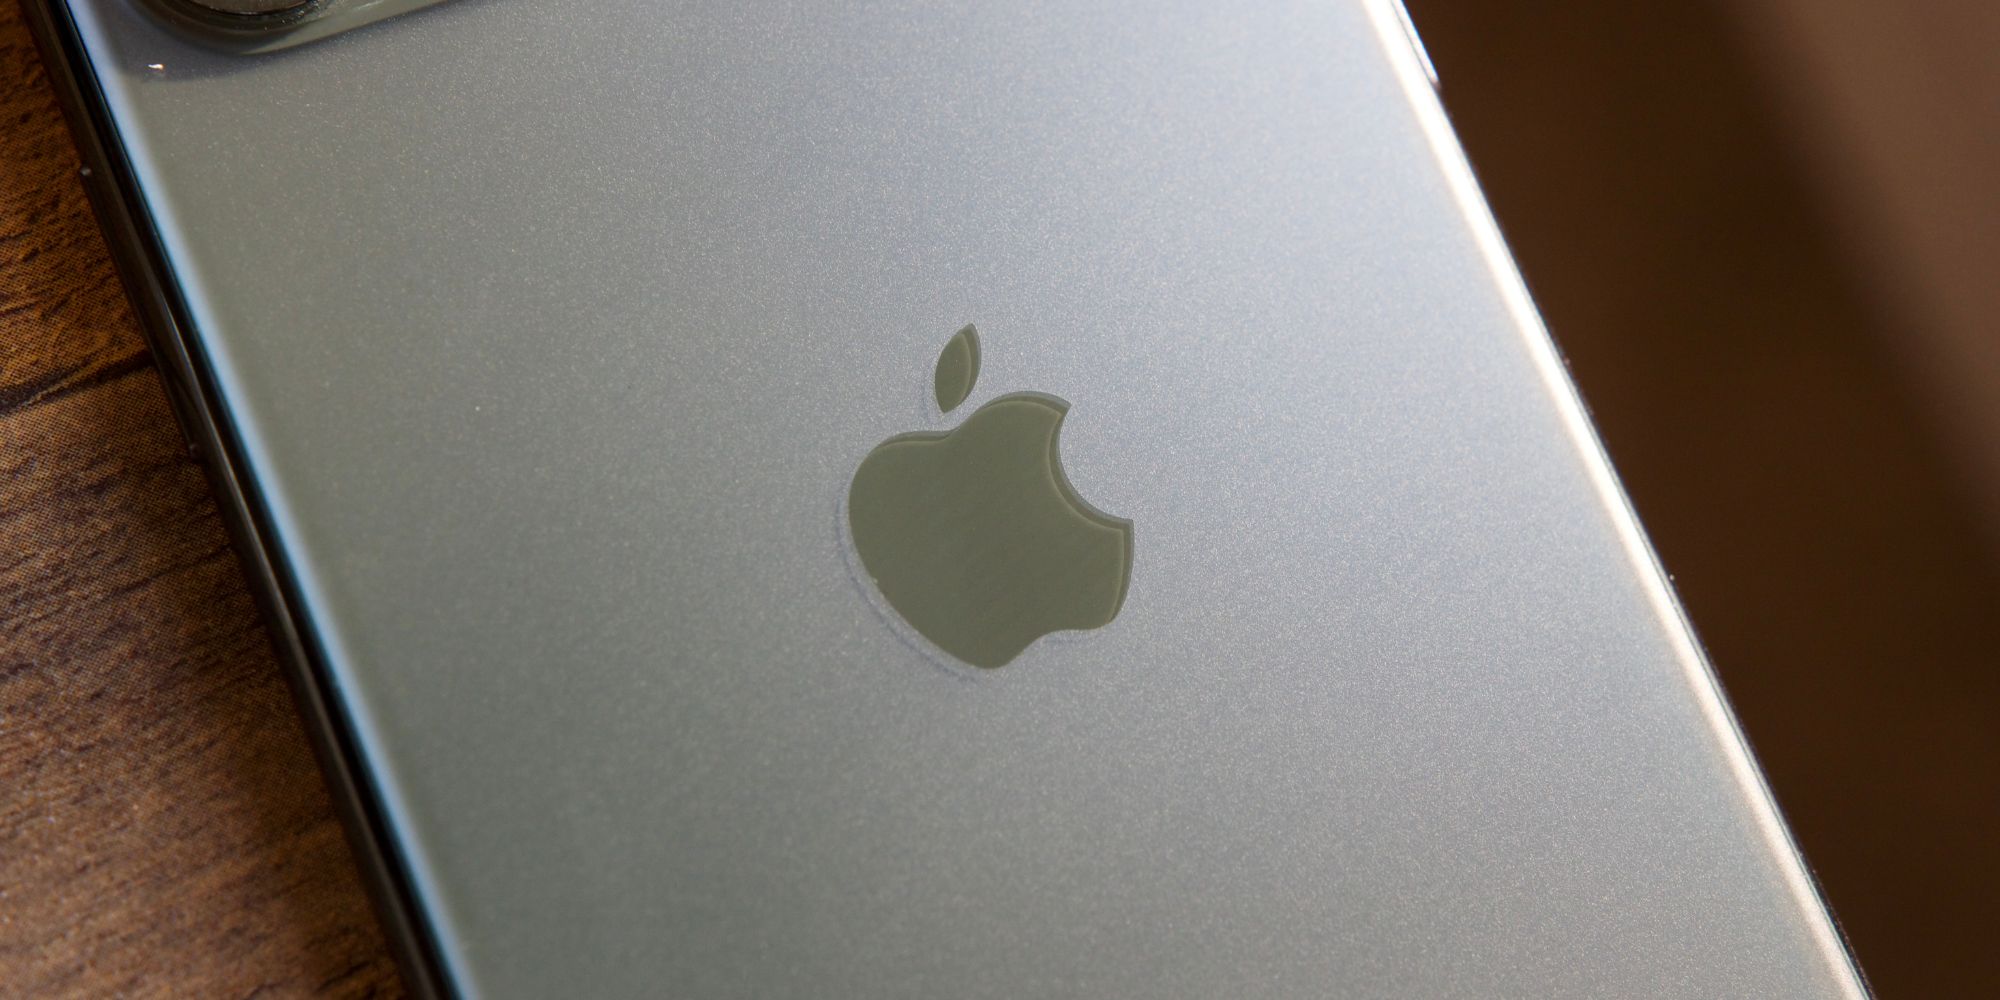 Apple logo on an iPhone